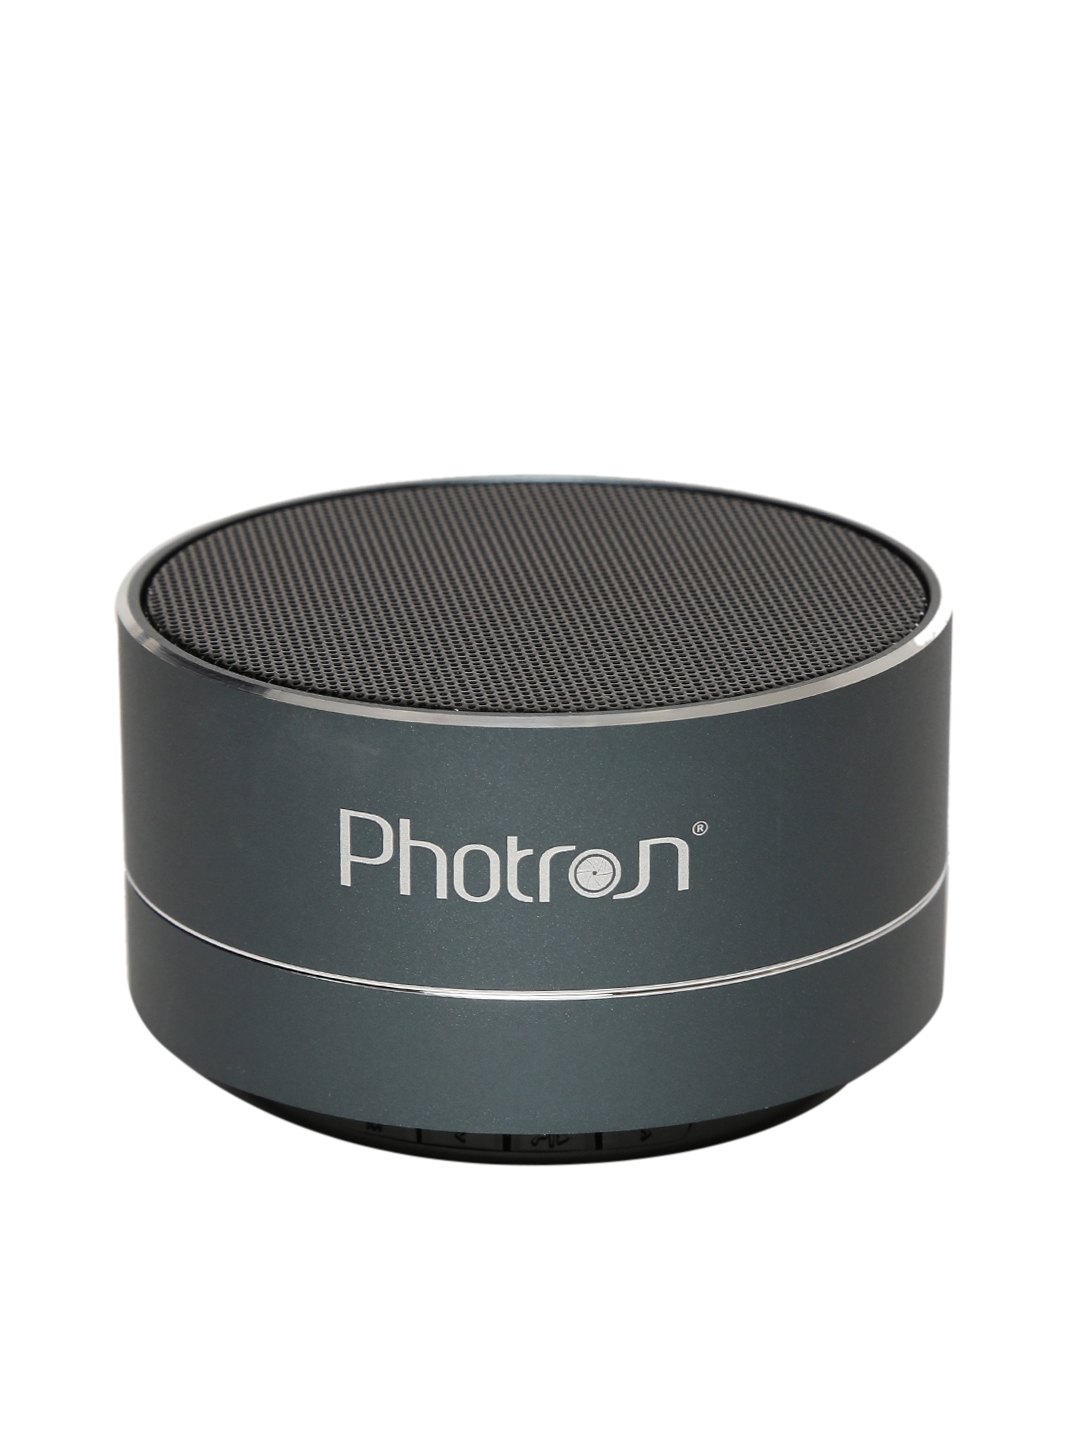 photron p10 price